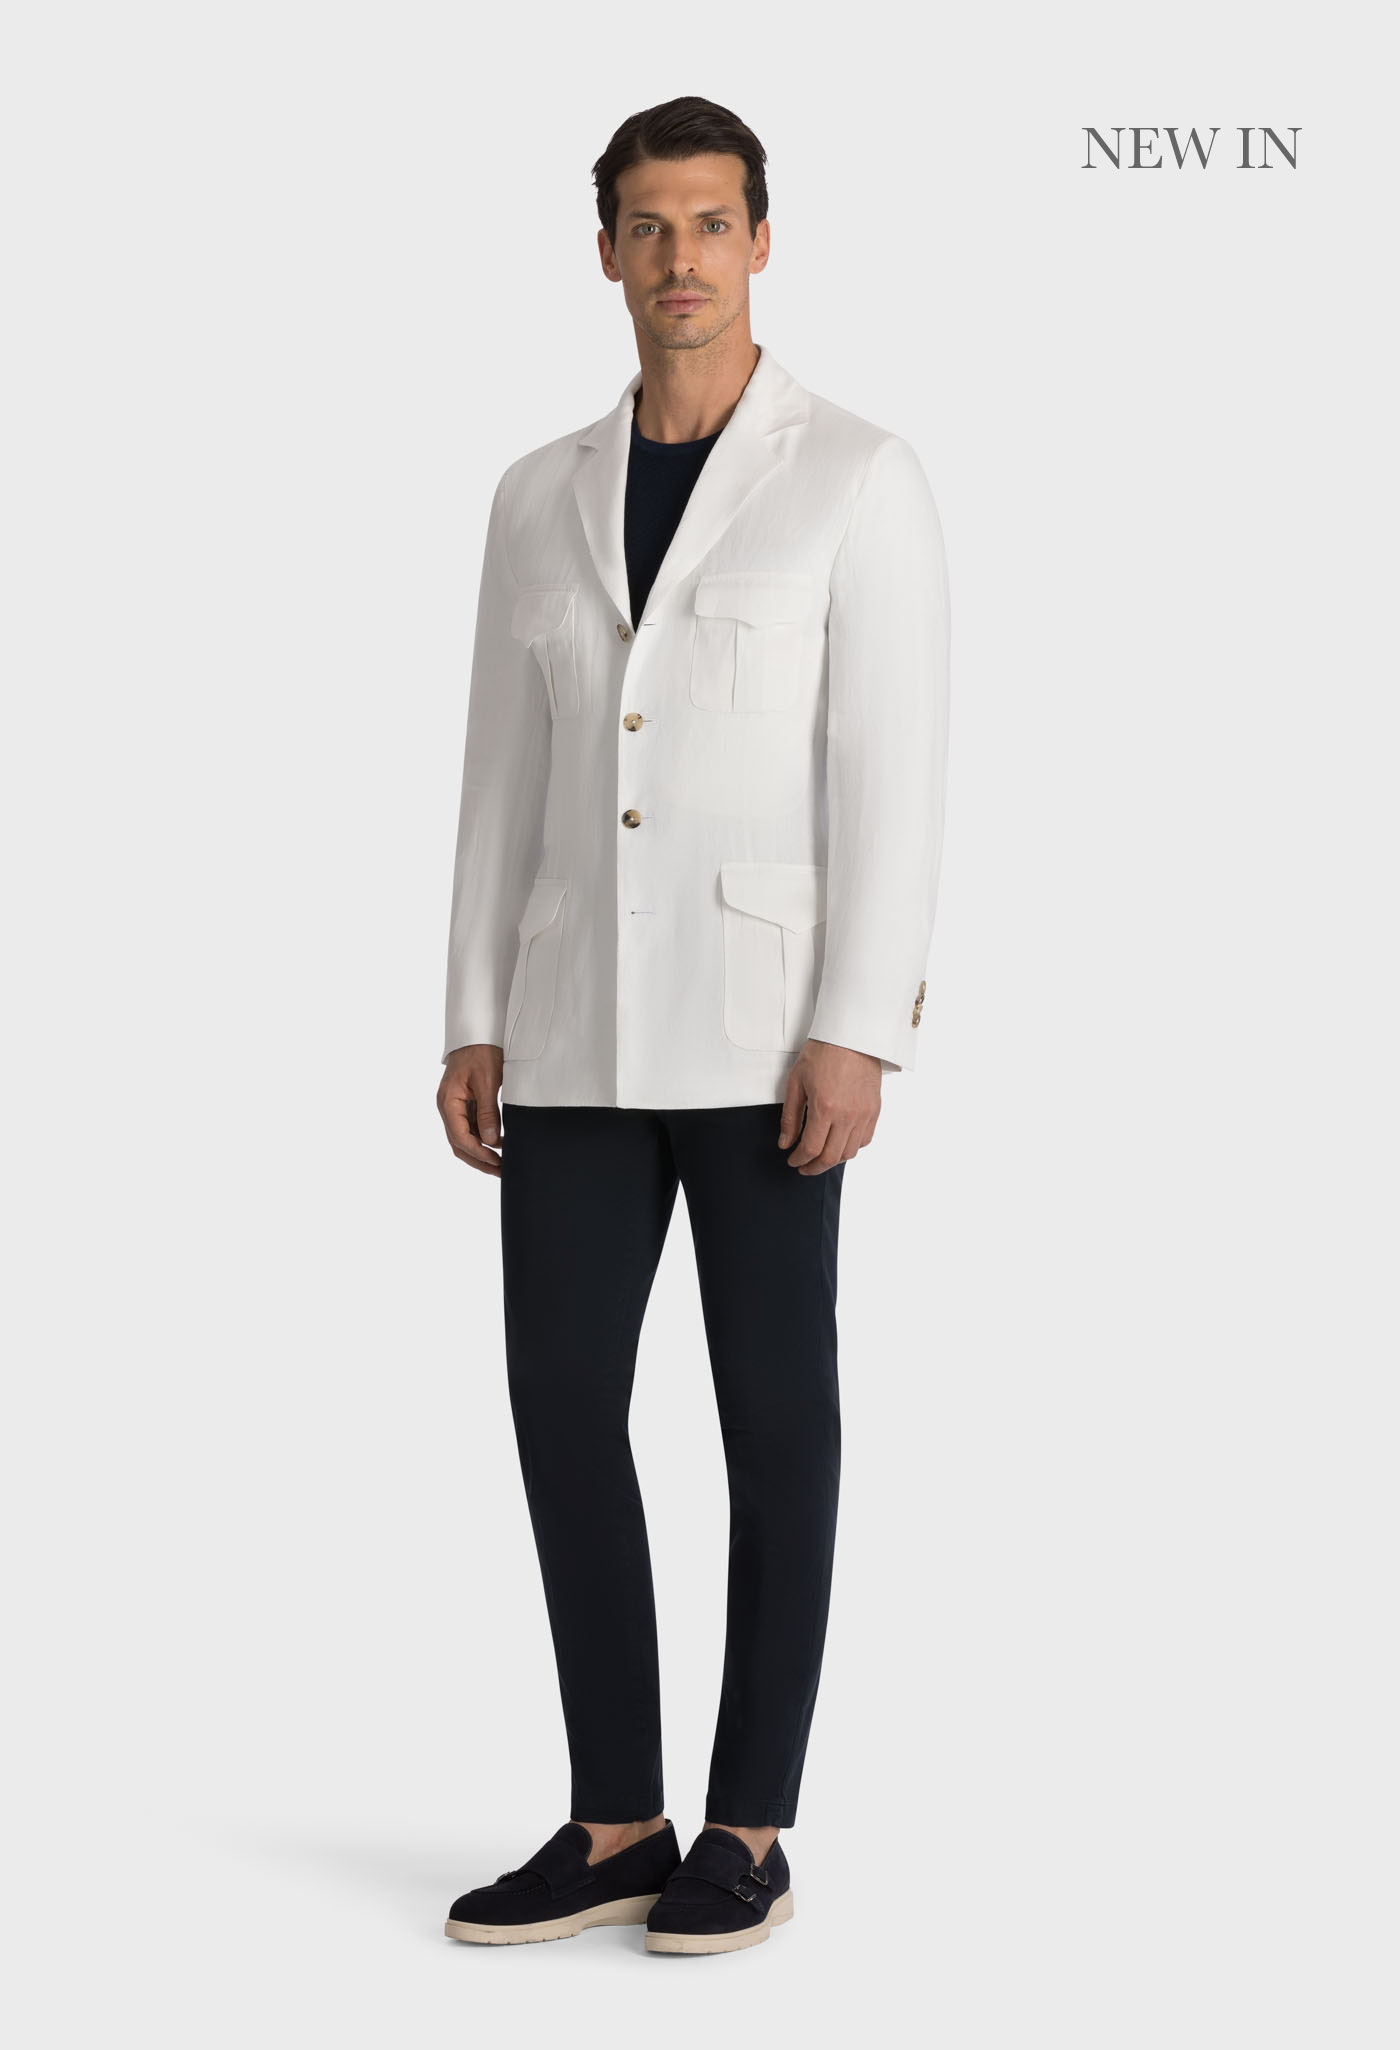 Optic White Tuscany Jacket - 100% Linen